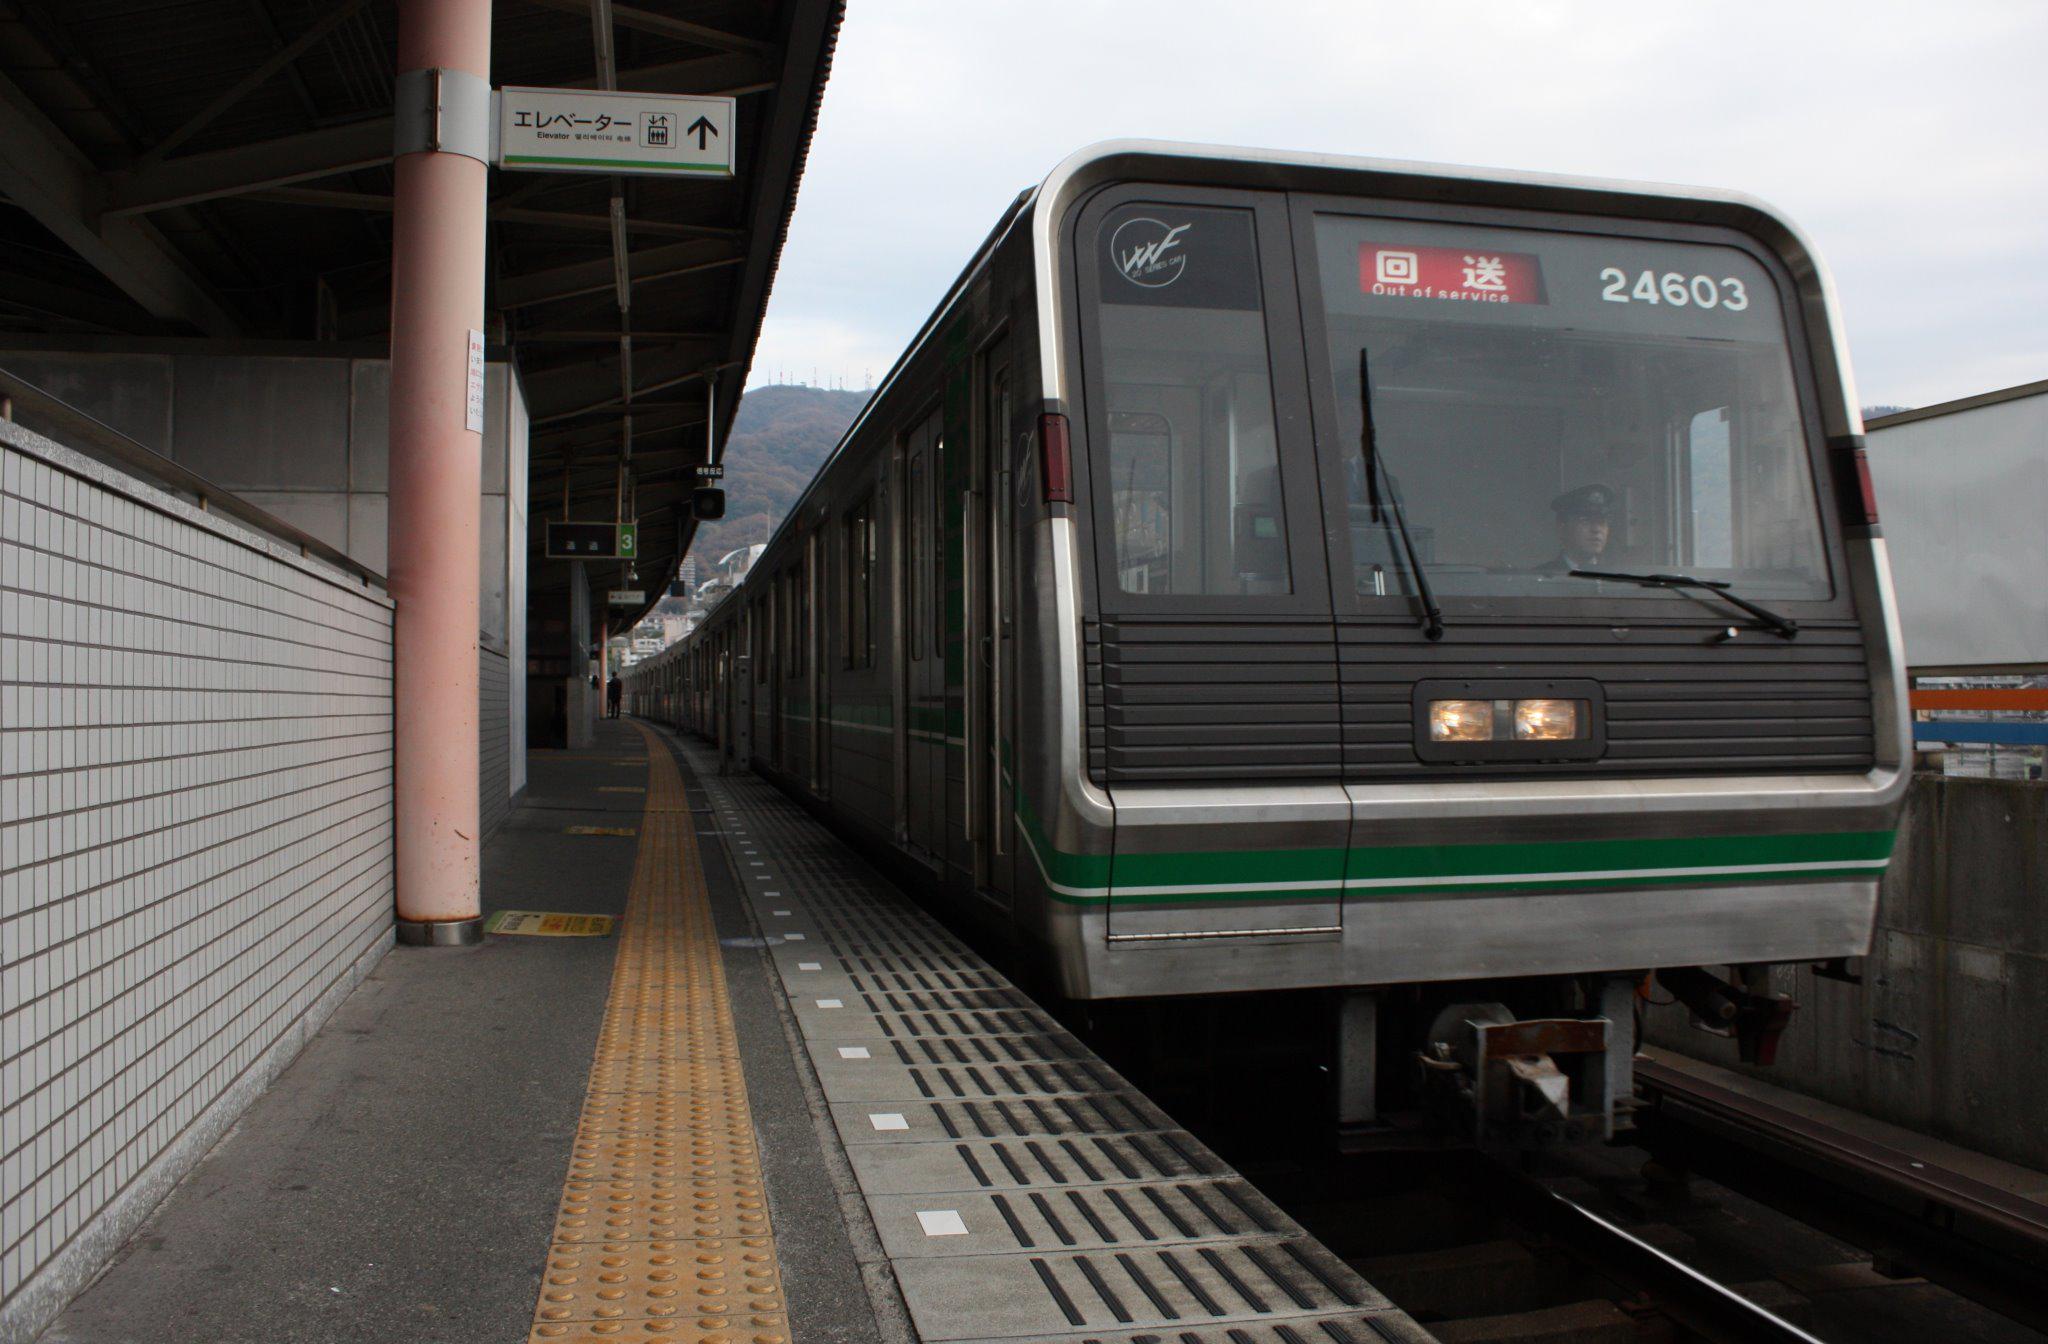 【中央線】24603F(24系3編成)を使った近鉄乗務員研修列車が走る